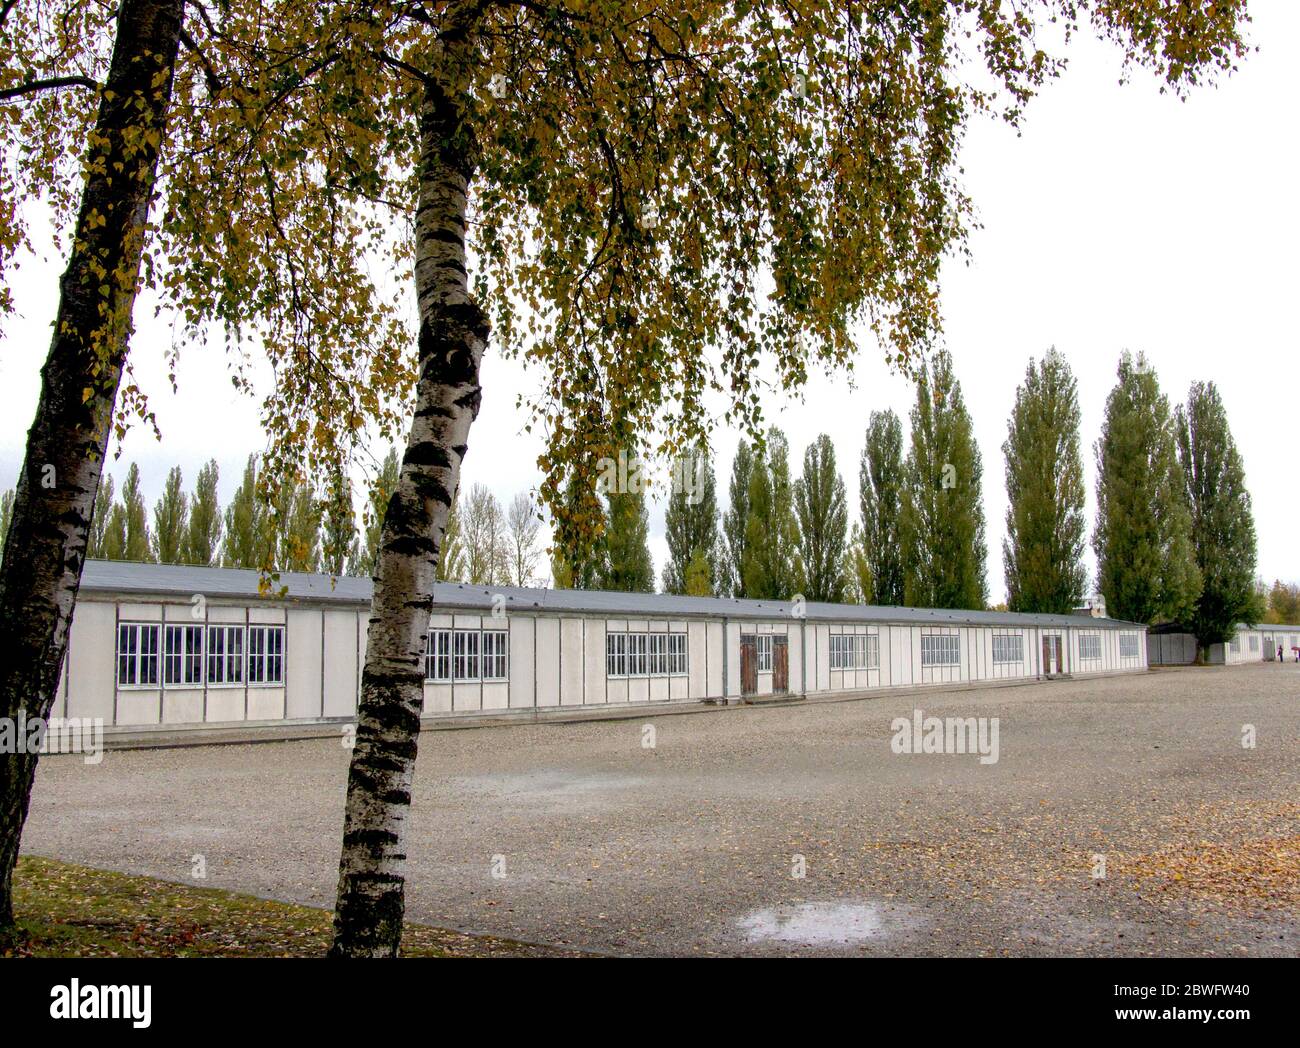 Casernes de prisonniers au camp de concentration de Dachau. C'était le premier camp de concentration nazi et un prototype pour toute autre concentration nazie Banque D'Images